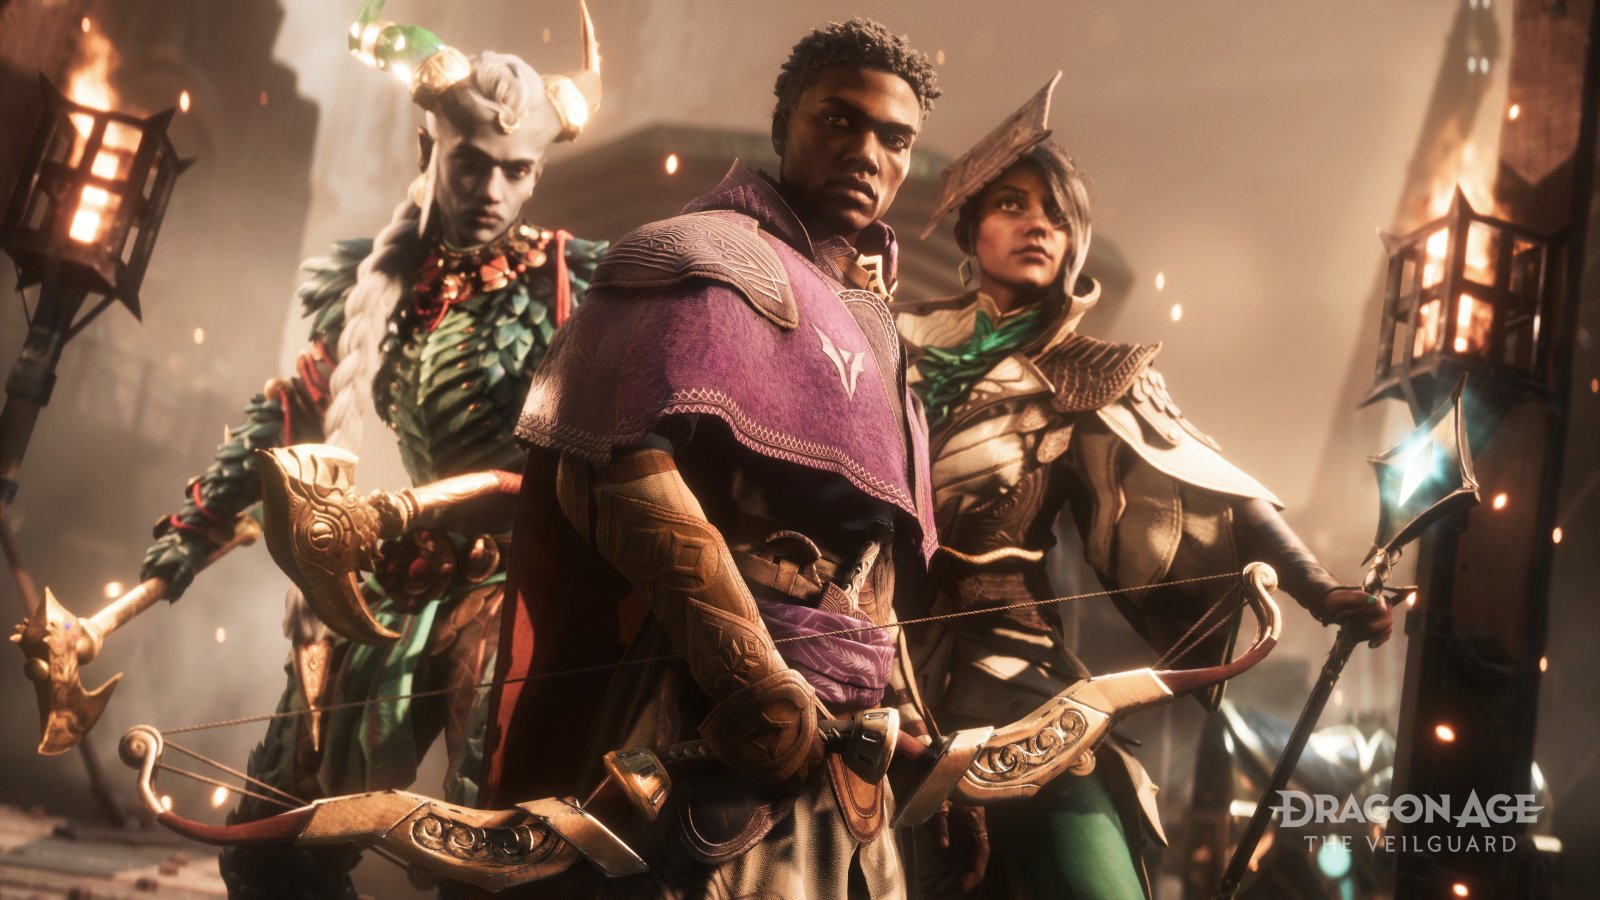 Il personaggio del giocatore e alcuni dei comprimari di Dragon Age: The Veilguard